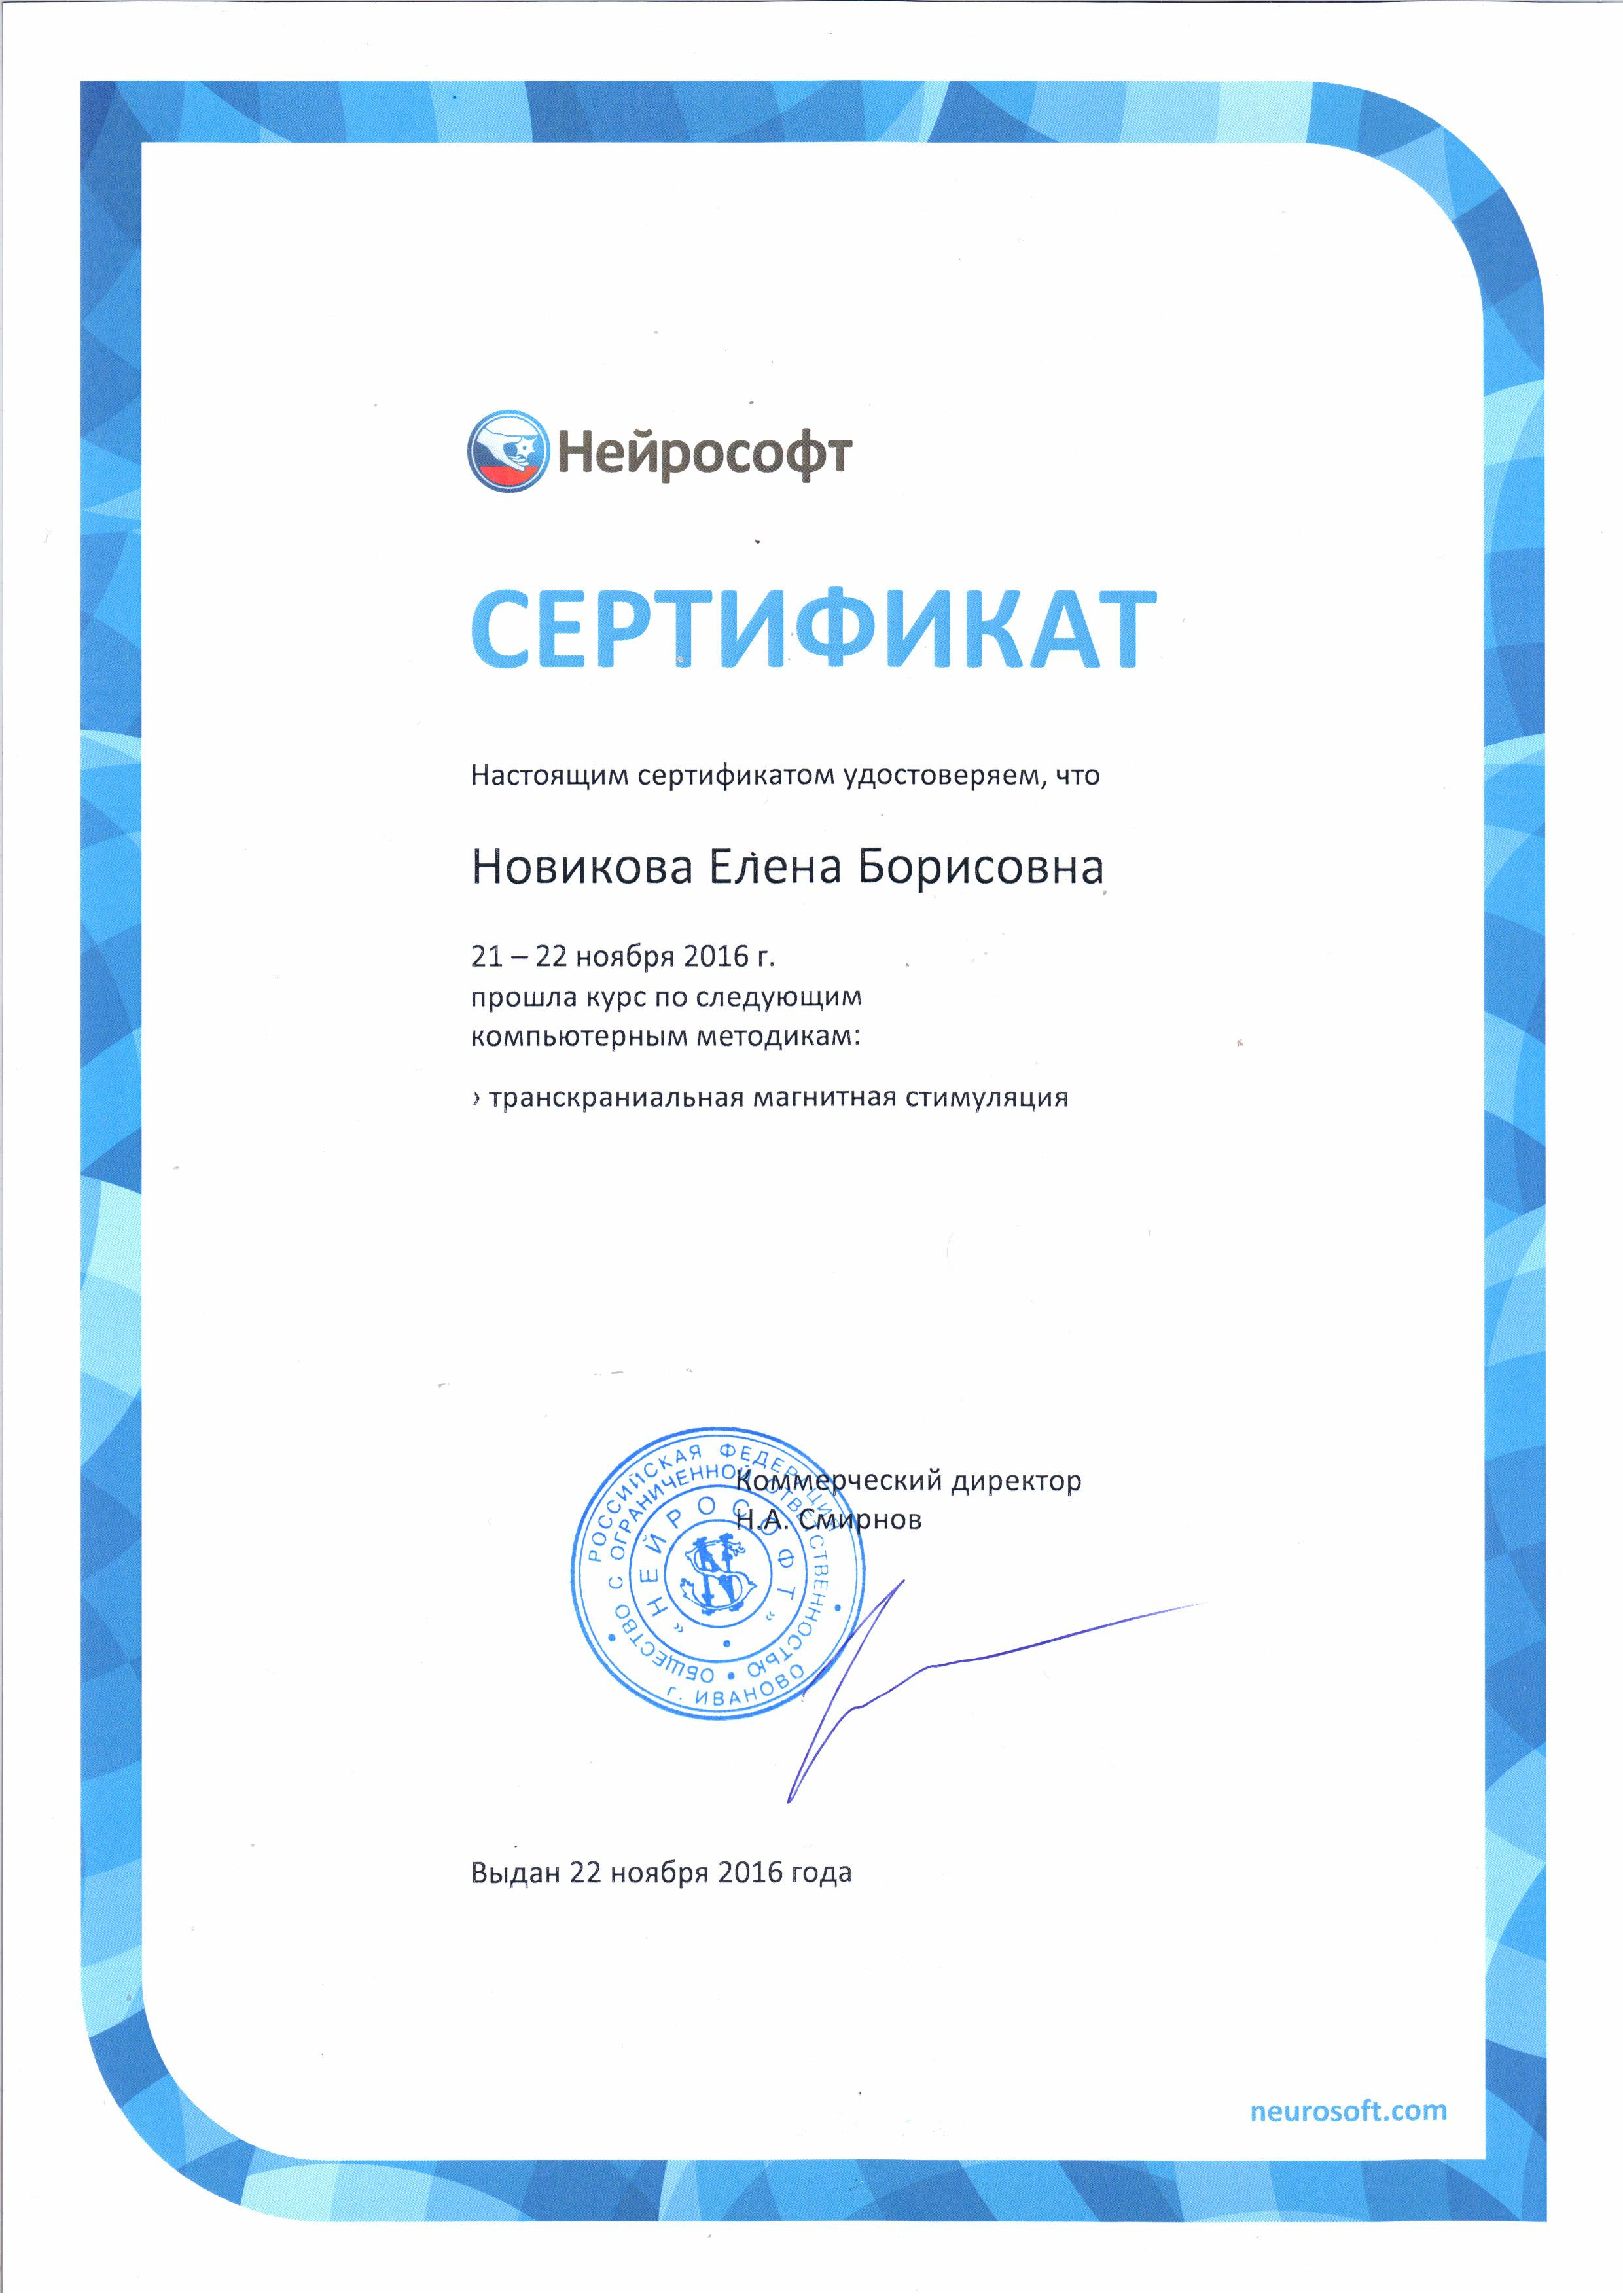 Сертификат о прохождении курса по применению ТМС